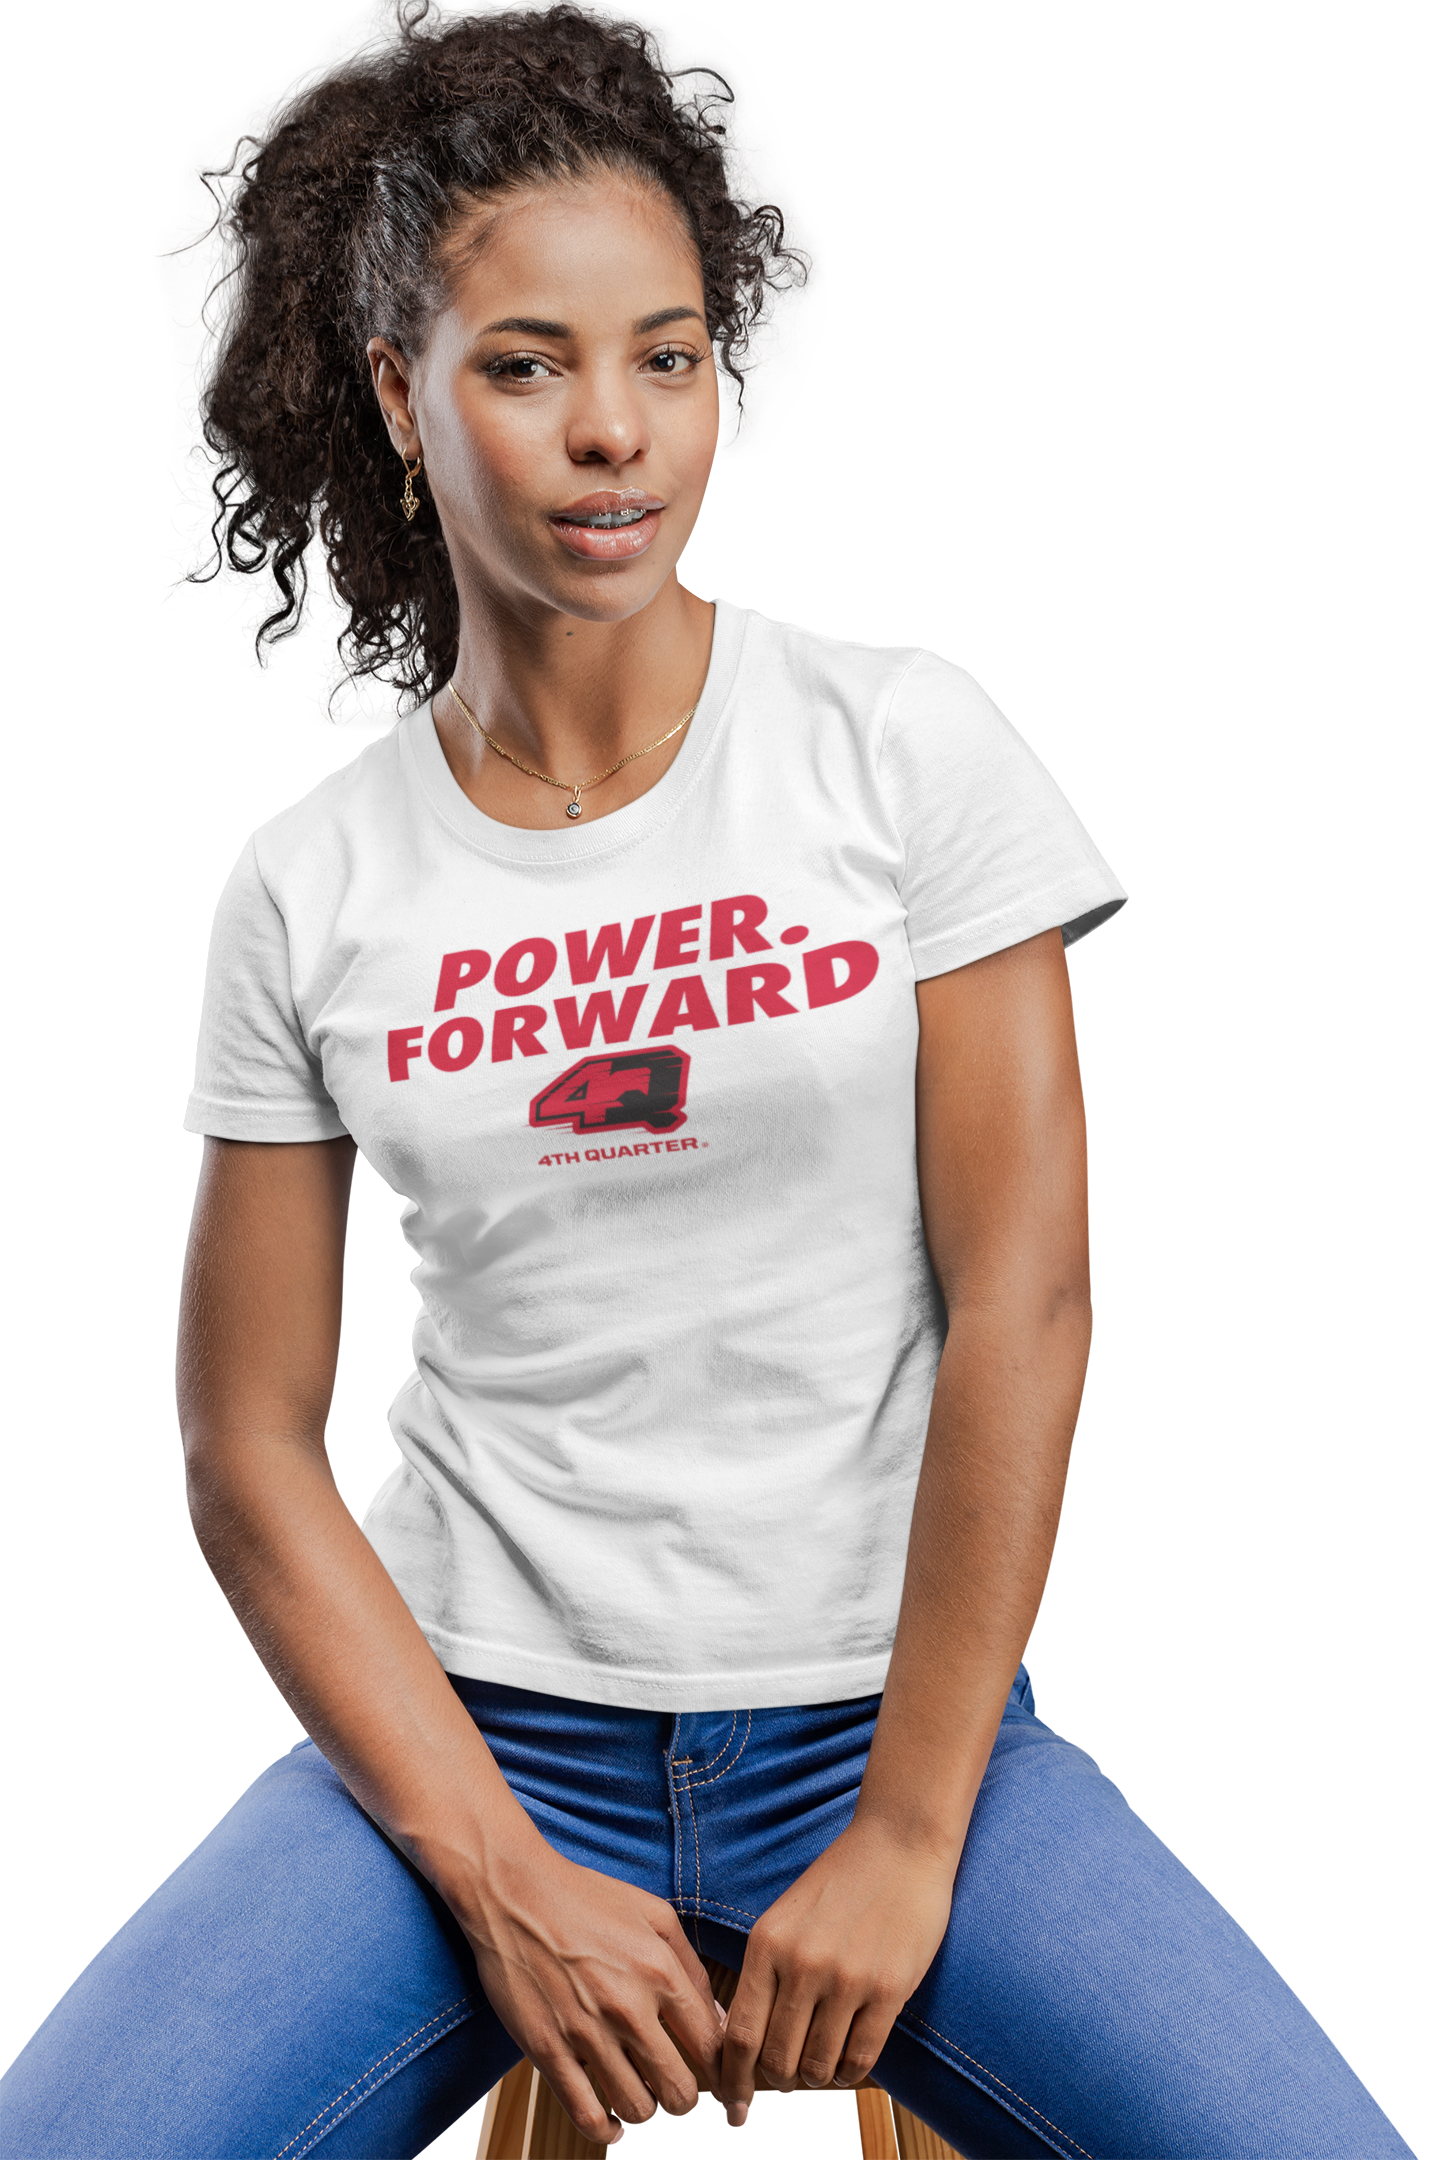 4th Quarter Power. Forward T-Shirt